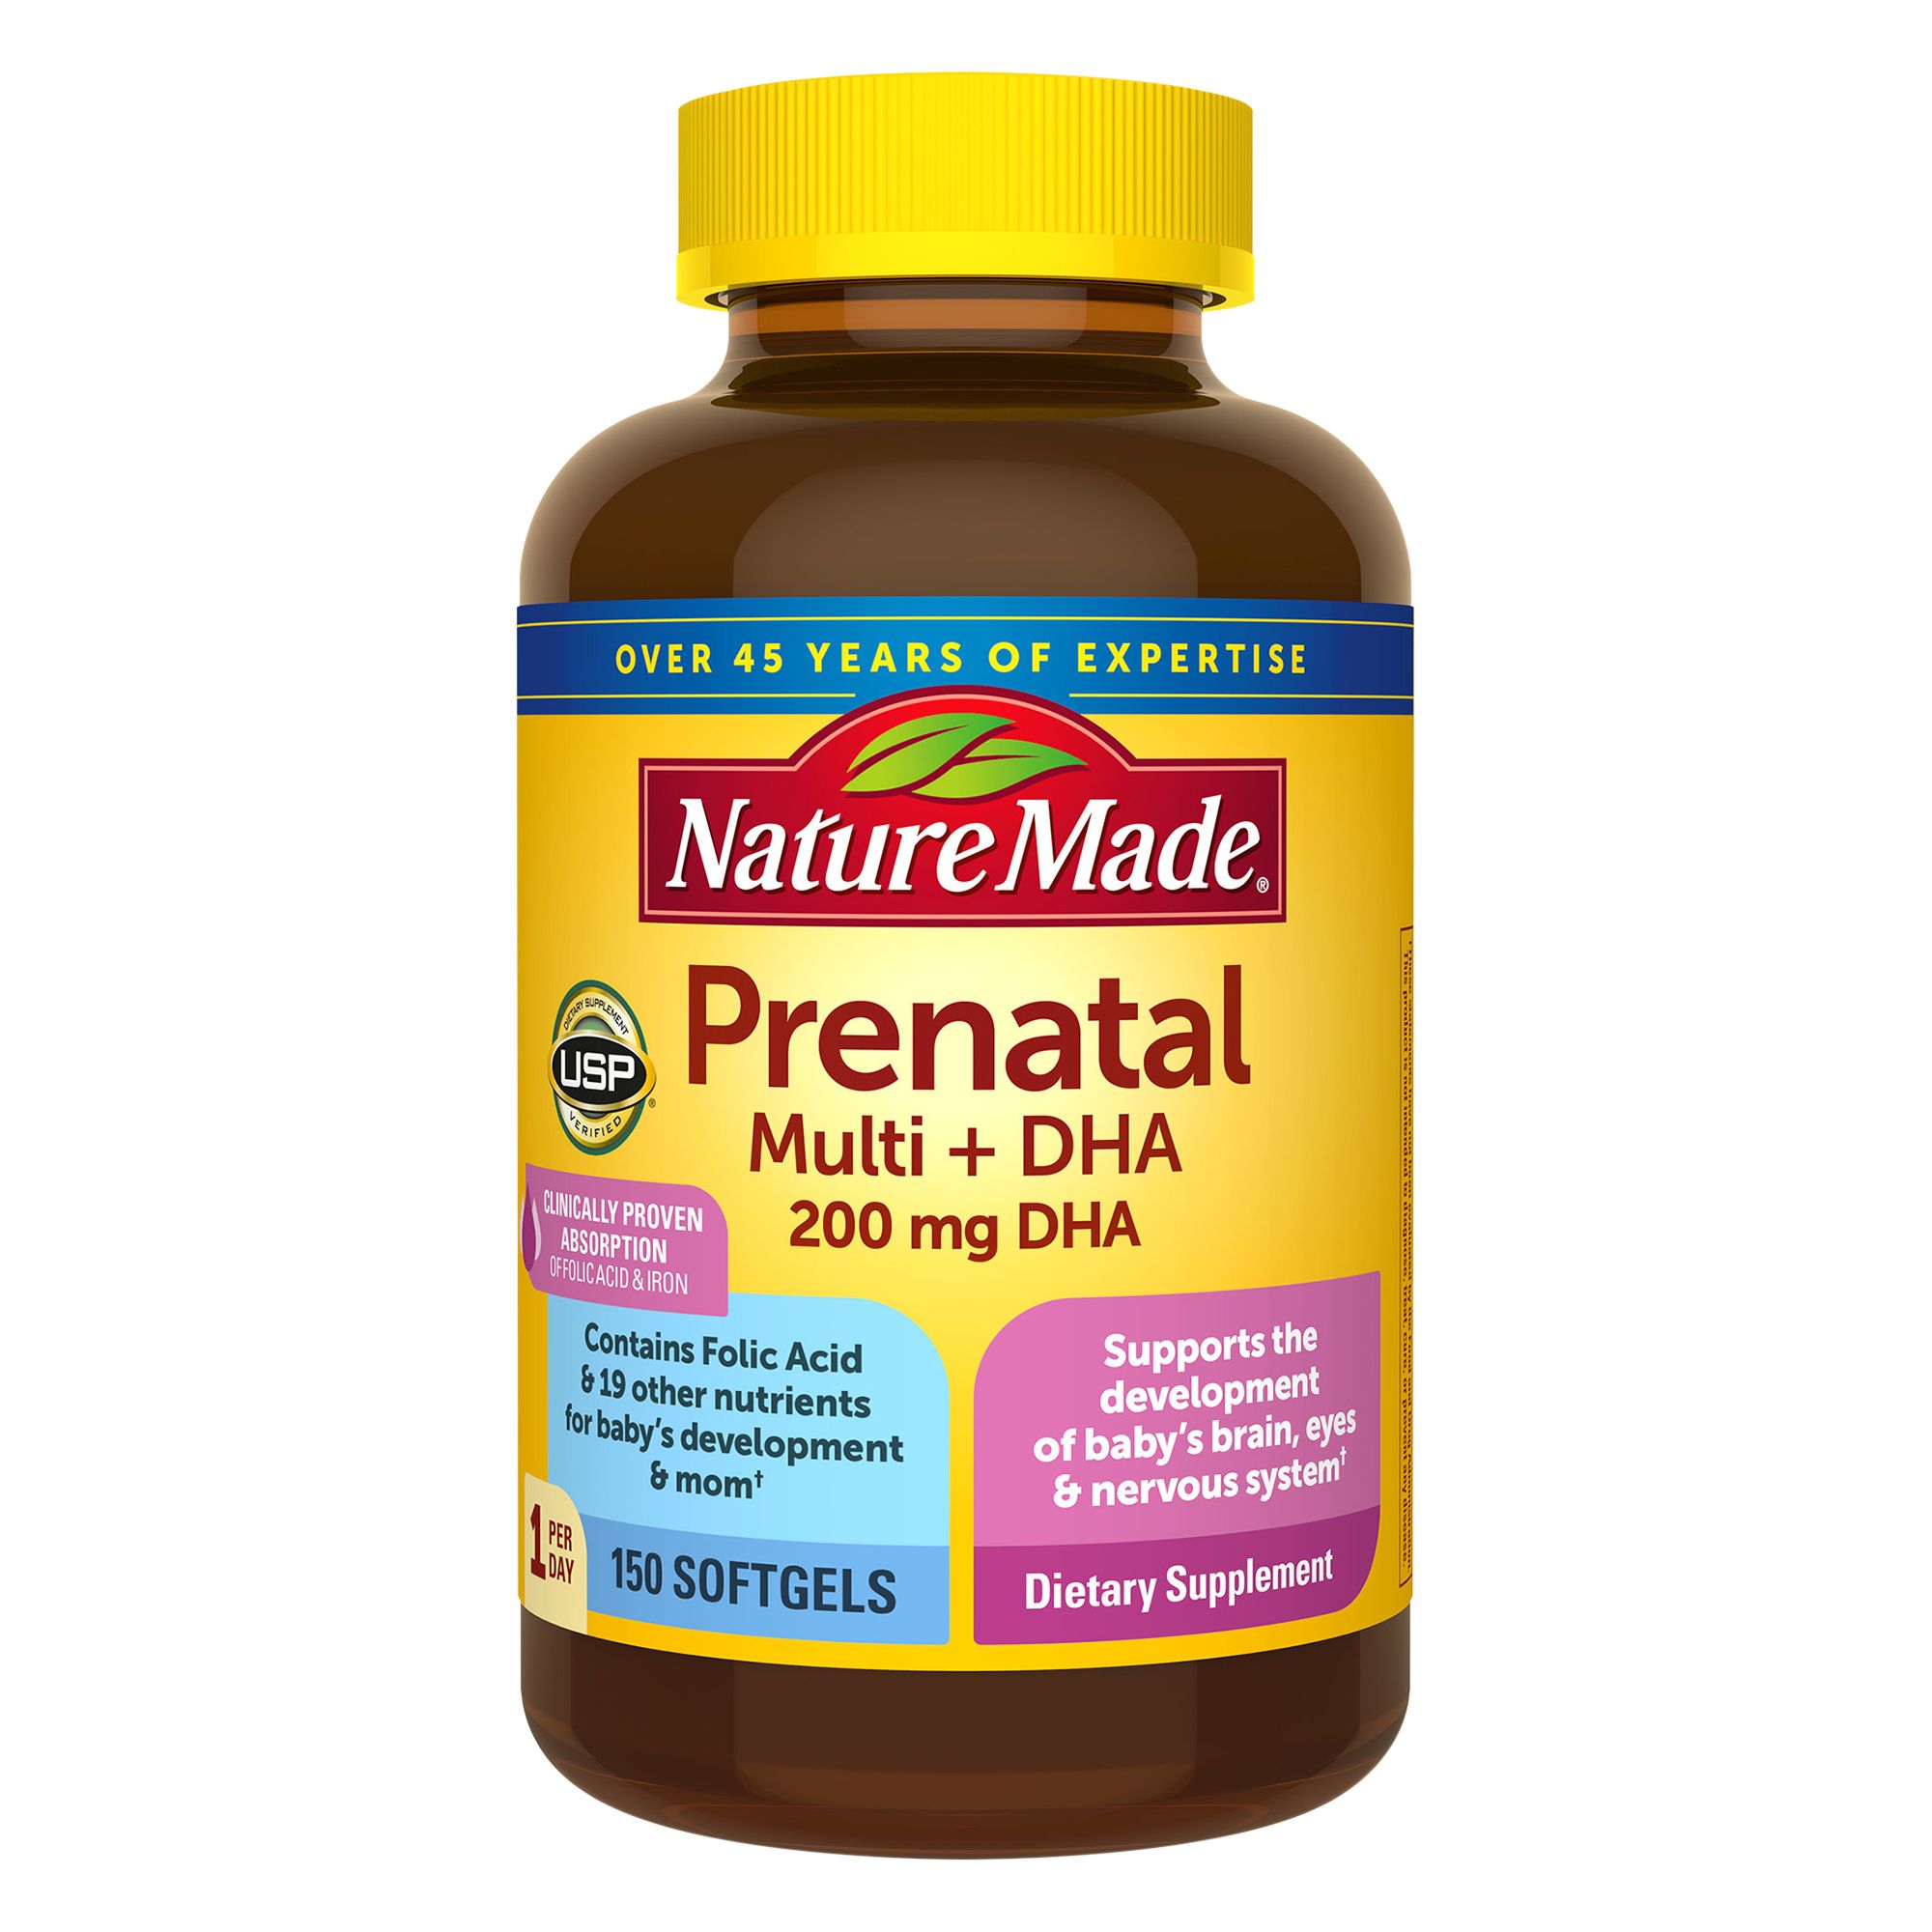 Baby & Me 2™ Prenatal Multi